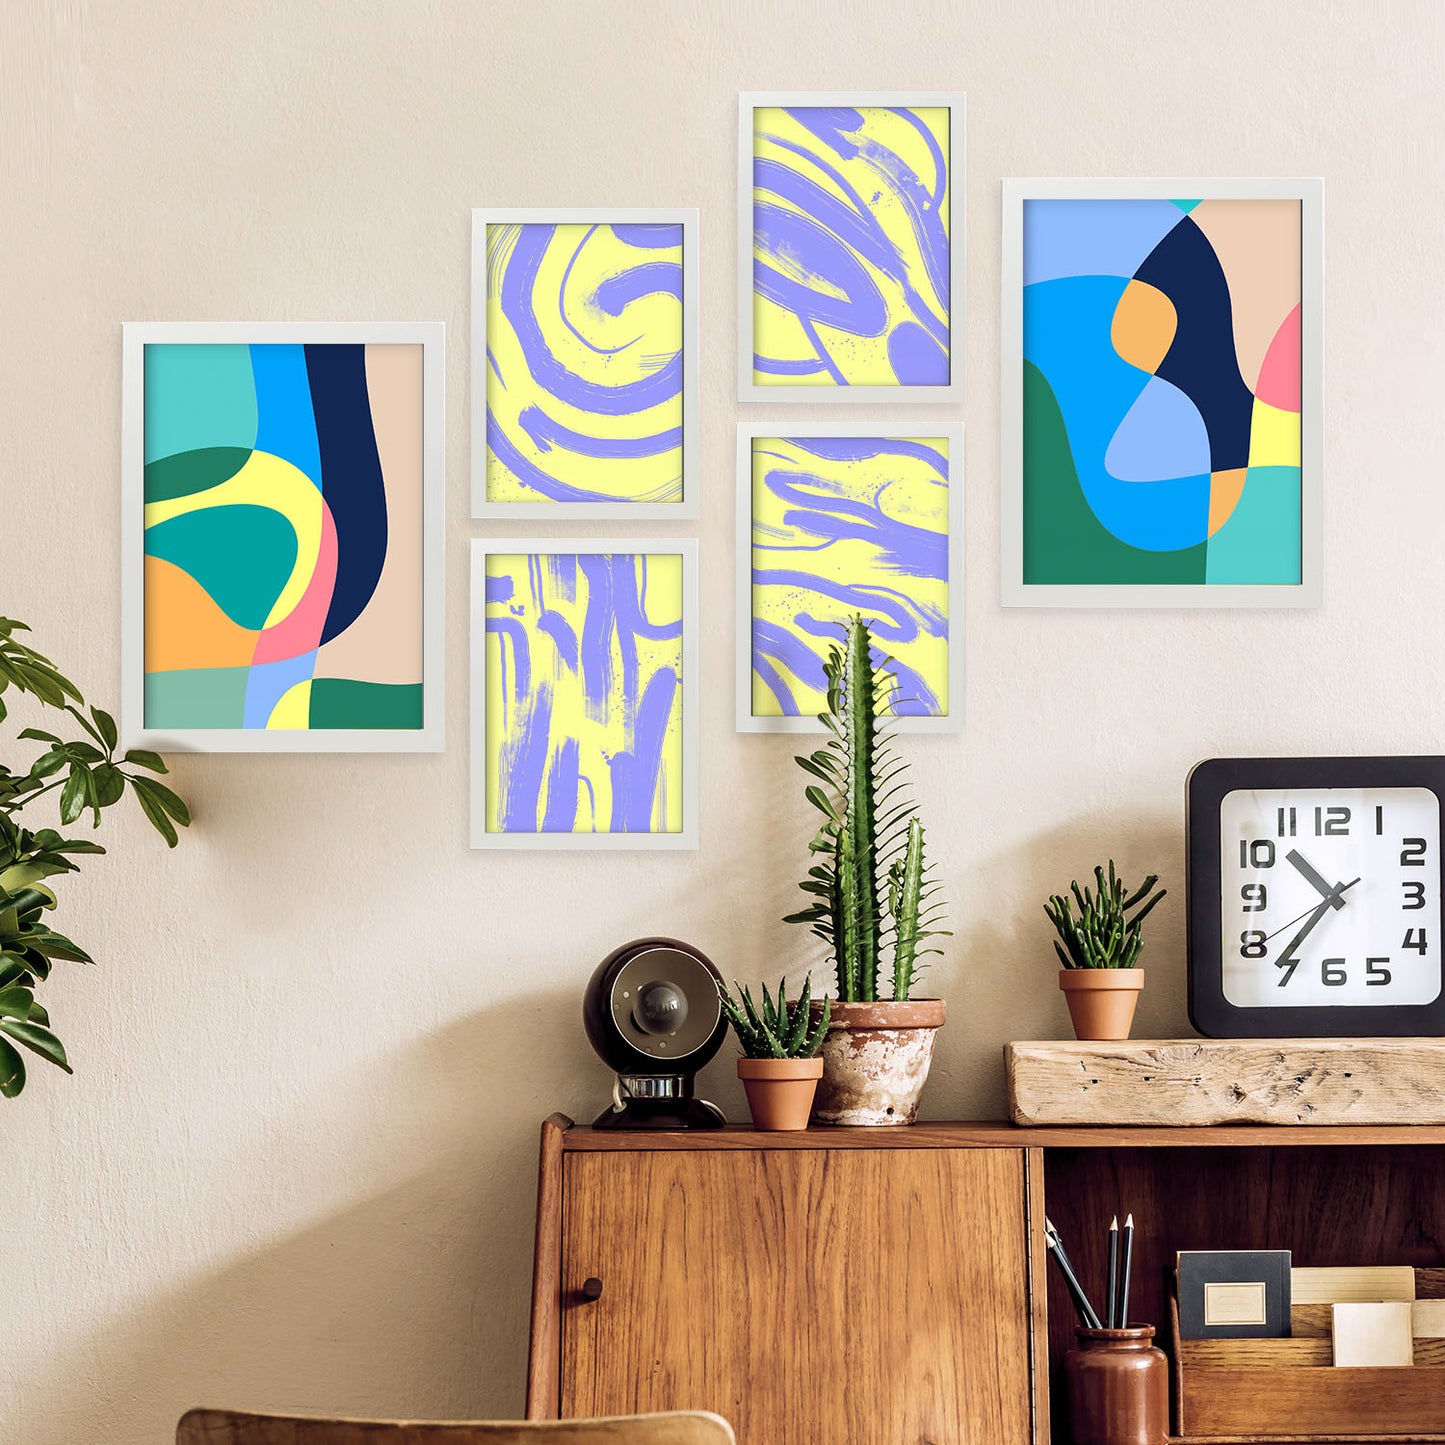 Nacnic Set de 6 Artes sin viento Posters. En Resúmenes coloridos. Estampados decorativos estéticos para su sala de estar, dormitorio, hogar Tamaños A4 y A3